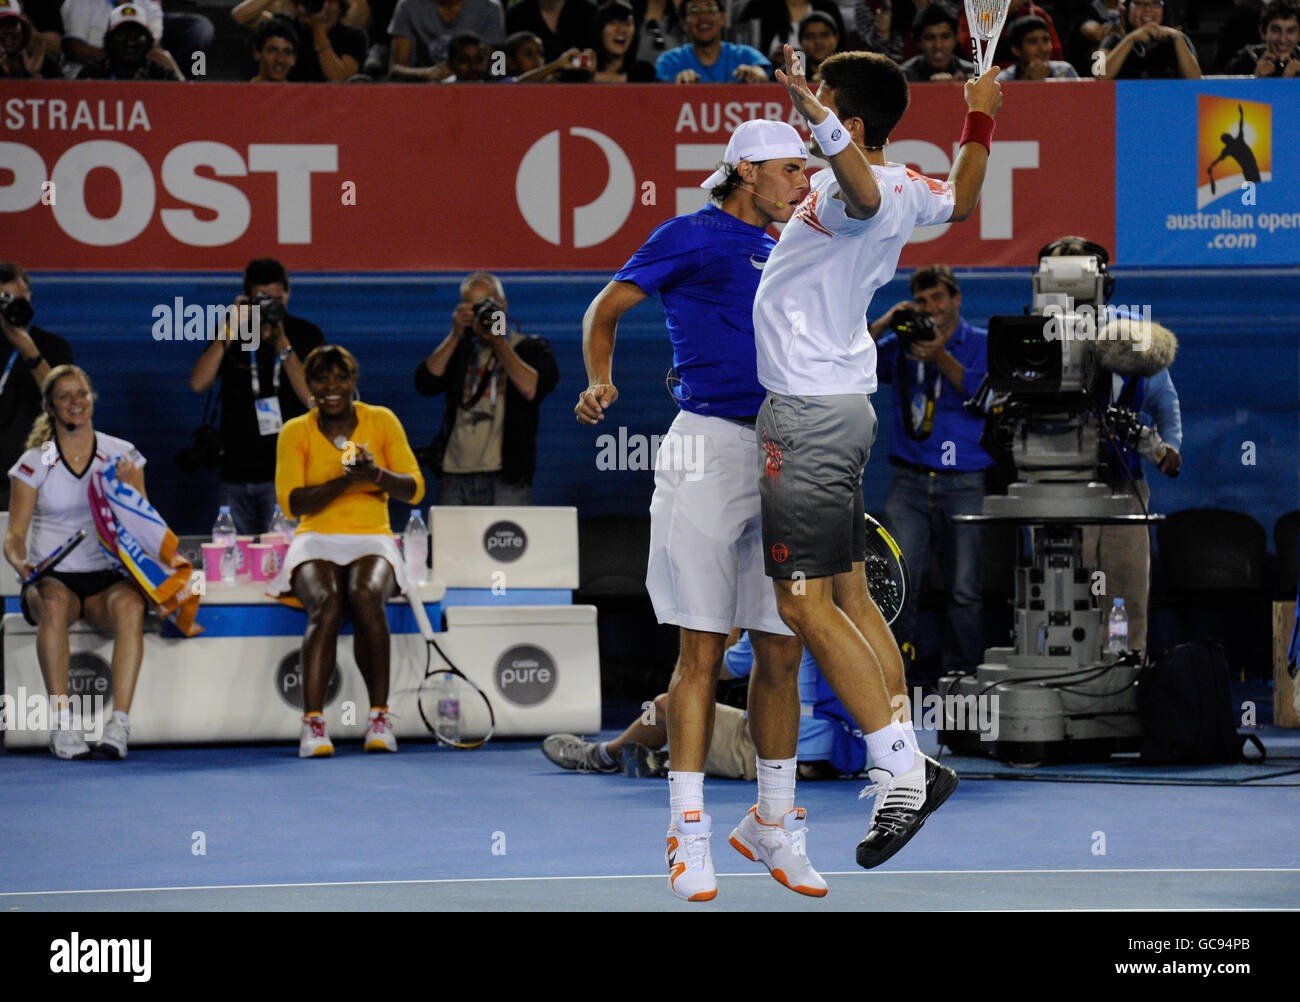 Tennis - Australian Open 2010 - Trainingstag - Melbourne Park. Rafael Nadal und Novak Djokovic stoßen während der Spendenaktion zur Unterstützung Haitis nach dem Erdbeben Truhen auf Stockfoto